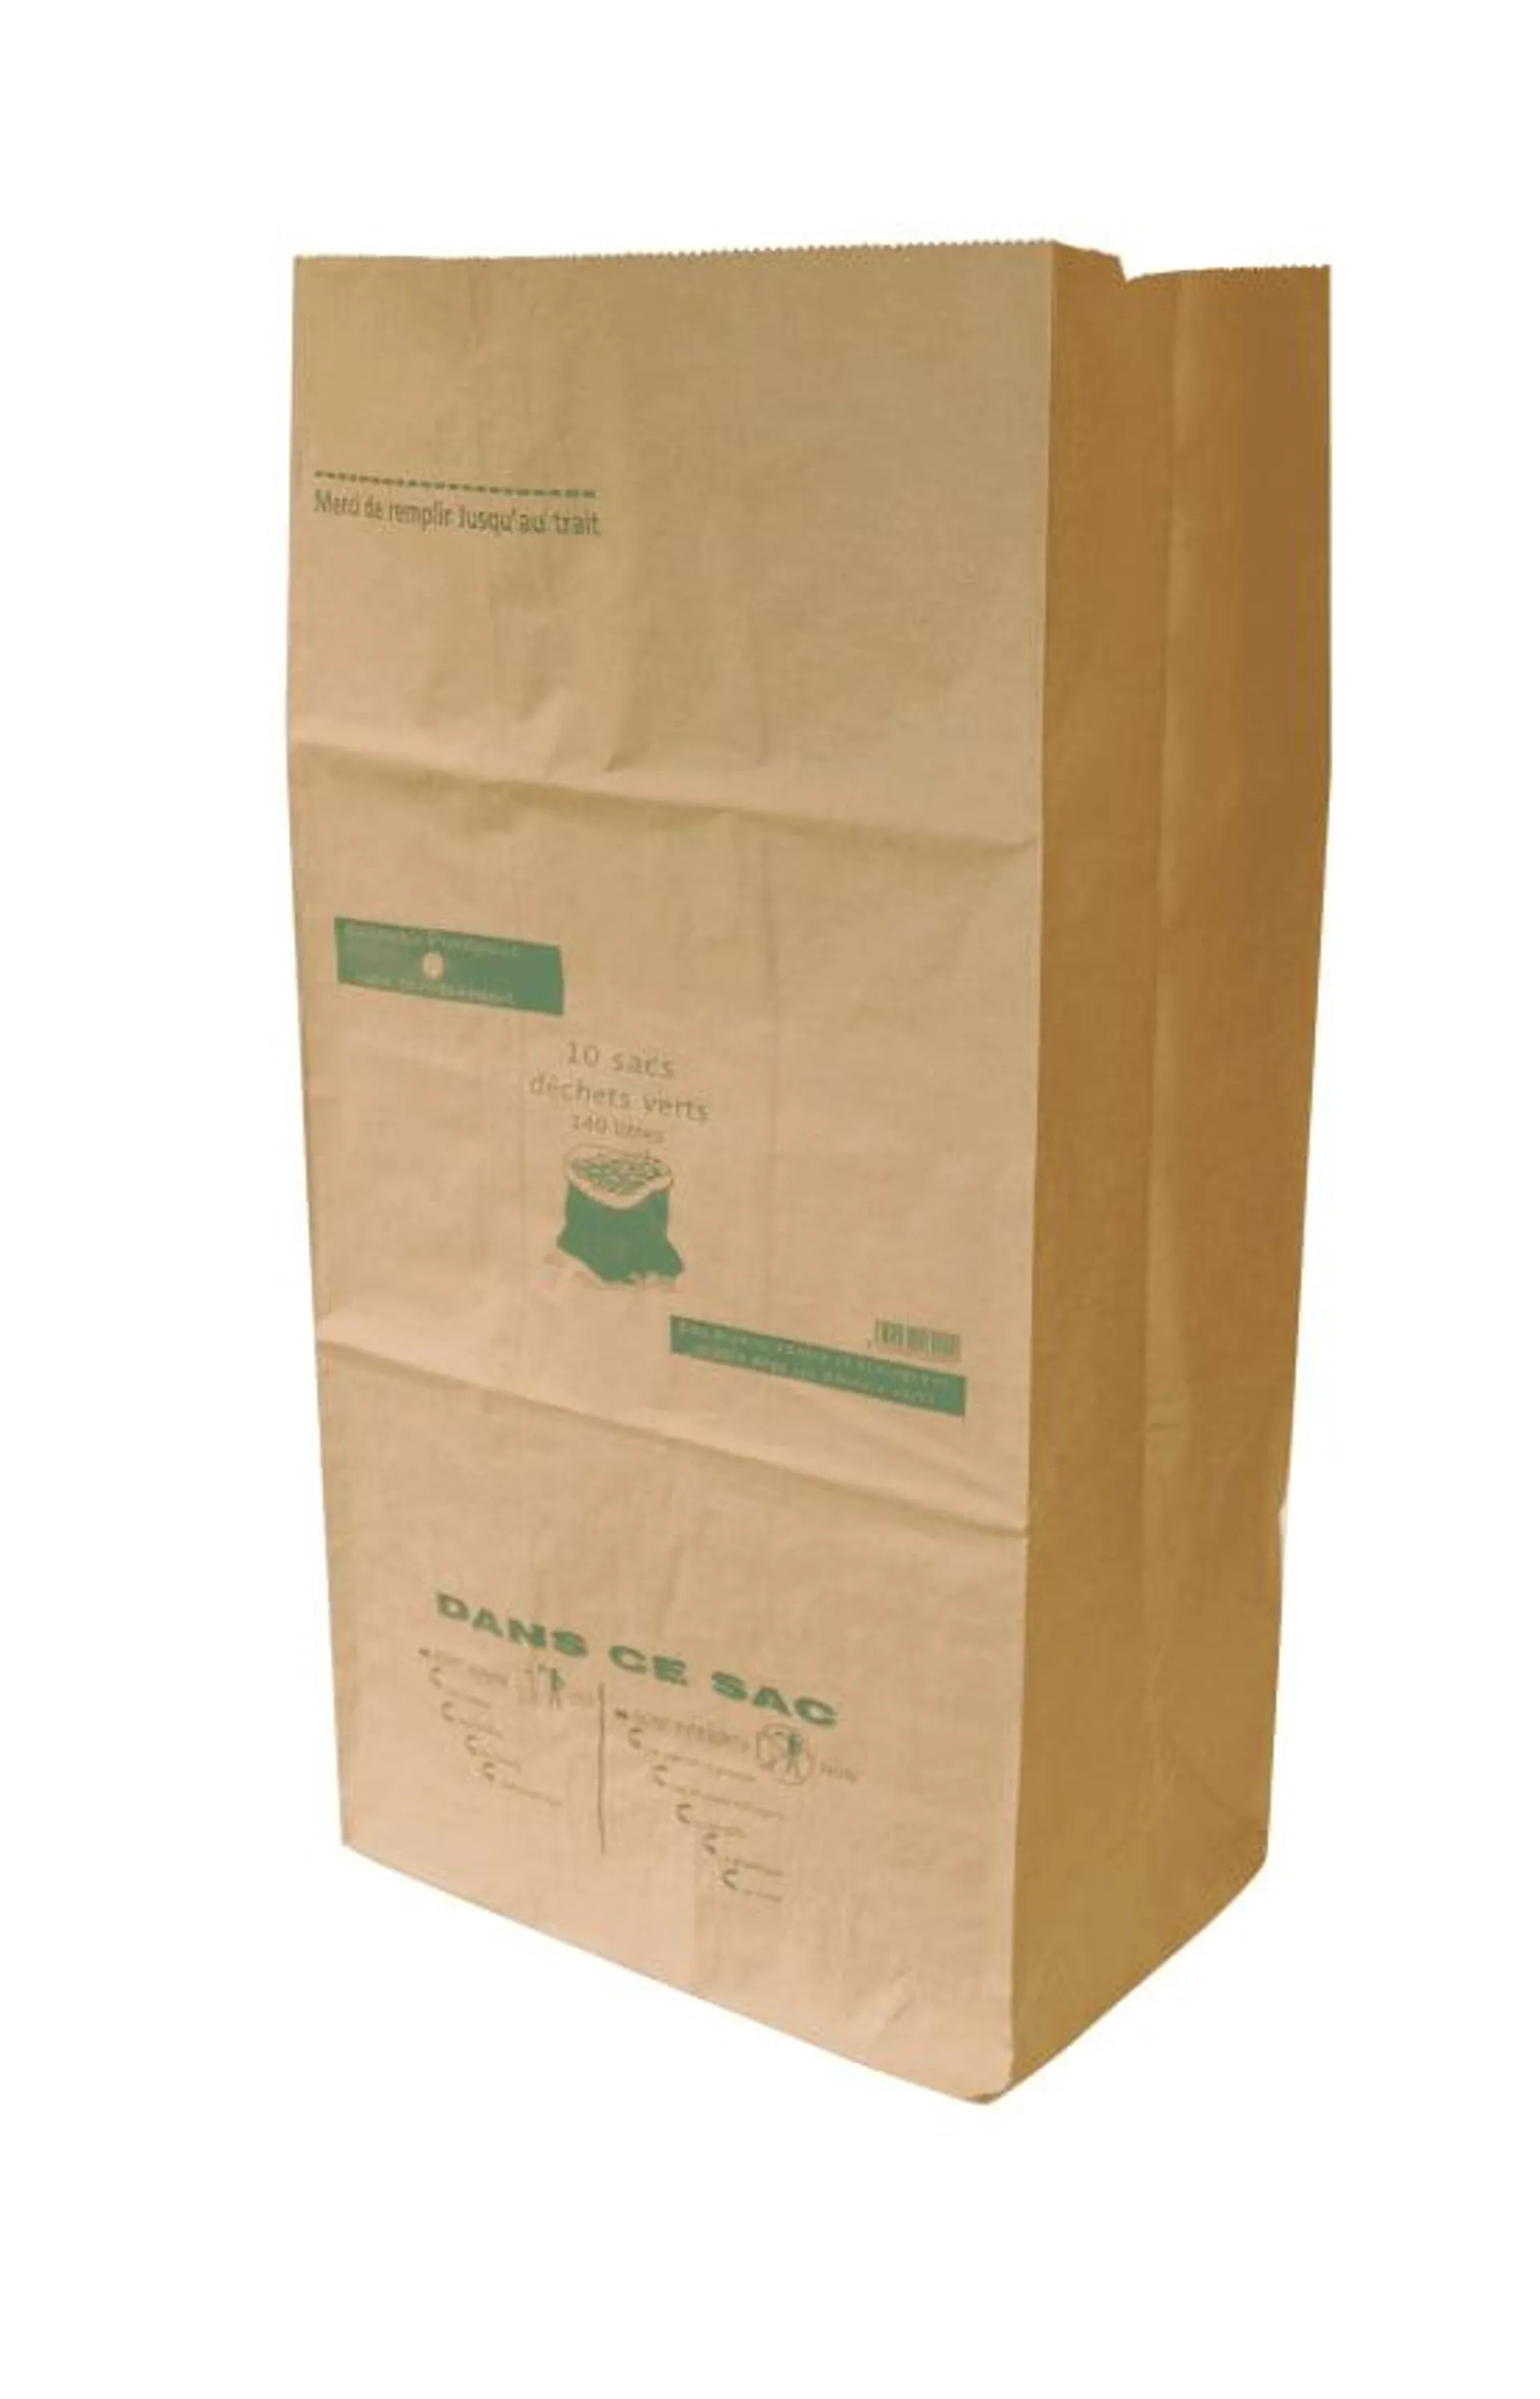 5 Sacs déchets verts papier kraft brun recyclé traité W.S. 120 L